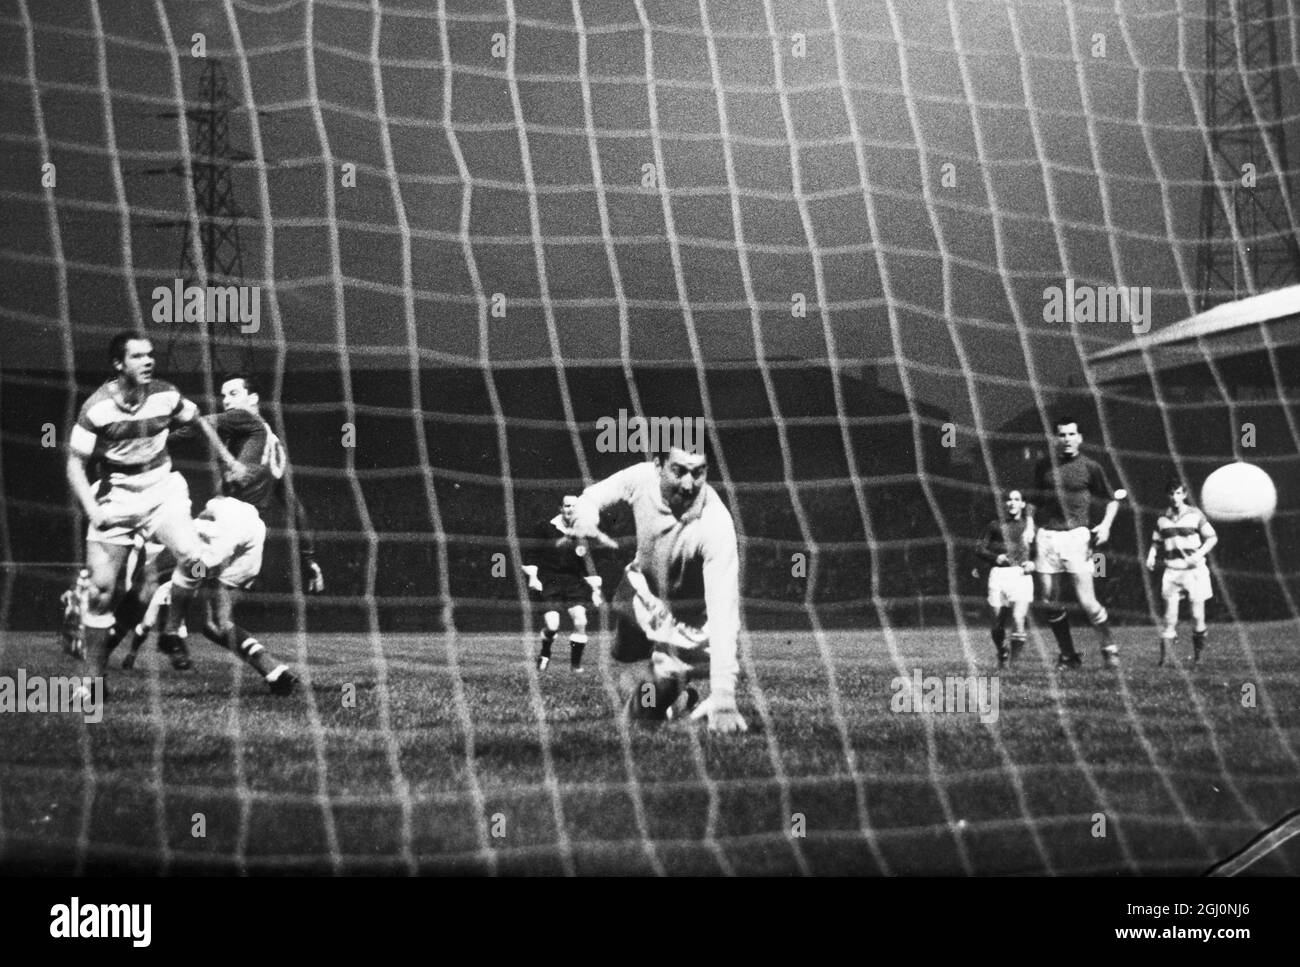 Parkhead , Glasgow ; ce coup de Chalmers du Celtic ( n° 10 ) sur la gauche , dépasse le but de Hamilton - gardien Lamont pour enregistrer le premier but du Celtic dans la première partie de la coupe de la Ligue écossaise , quart - finale de match à Parkhead . Le but était le premier - coureur de dix . Le match s'est terminé par une victoire 10 - 0 pour le Celtic . 13 septembre 1968 Banque D'Images